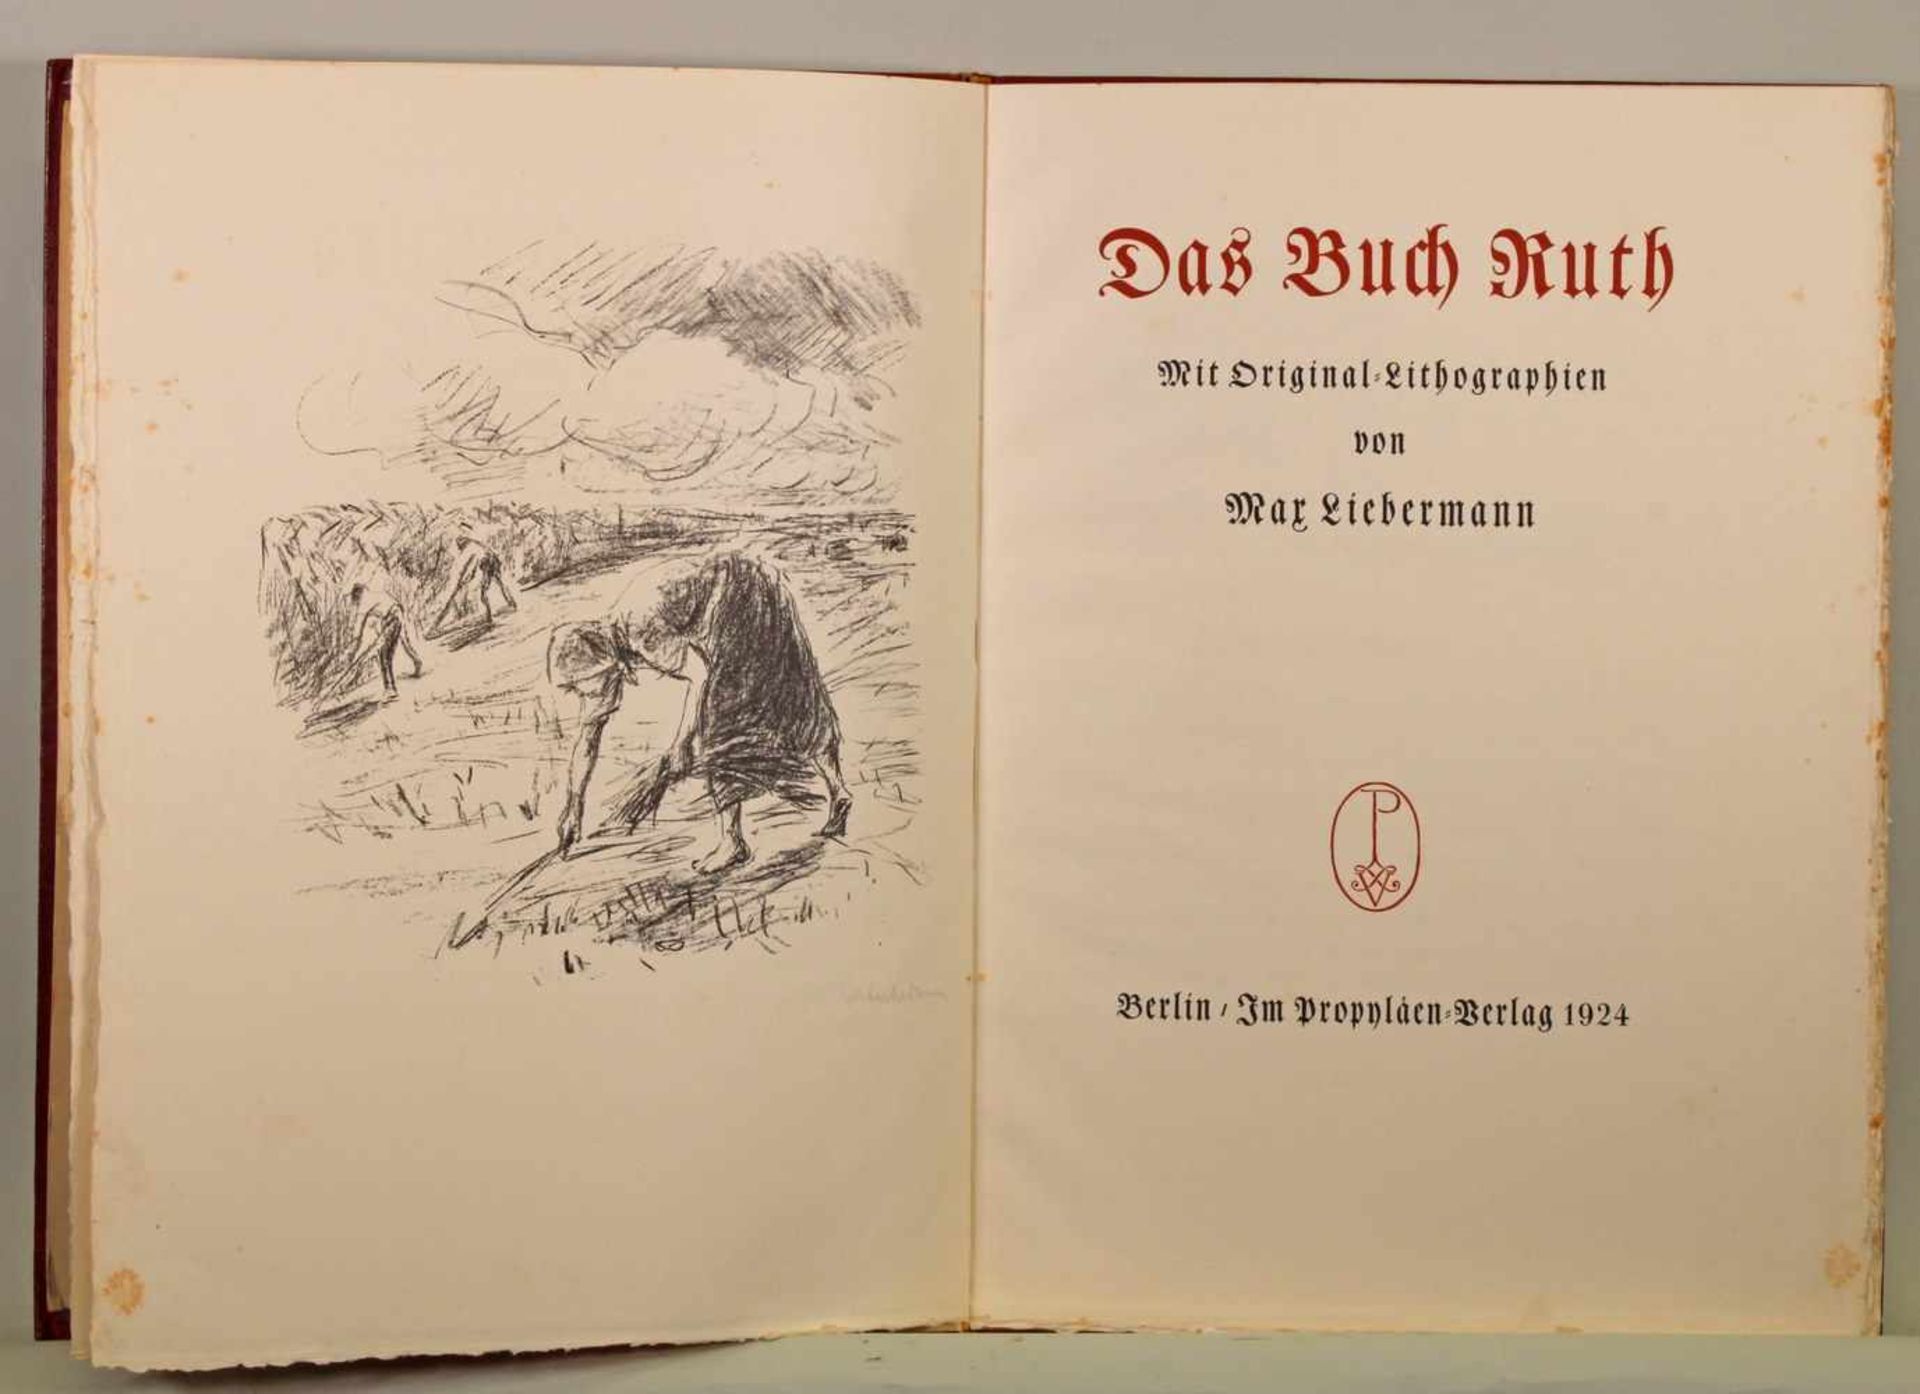 Max Liebermann, "Das Buch Ruth", Berlin, Propyläen-Verlag 1924, 11 Blätter, mit neun Lithografien,